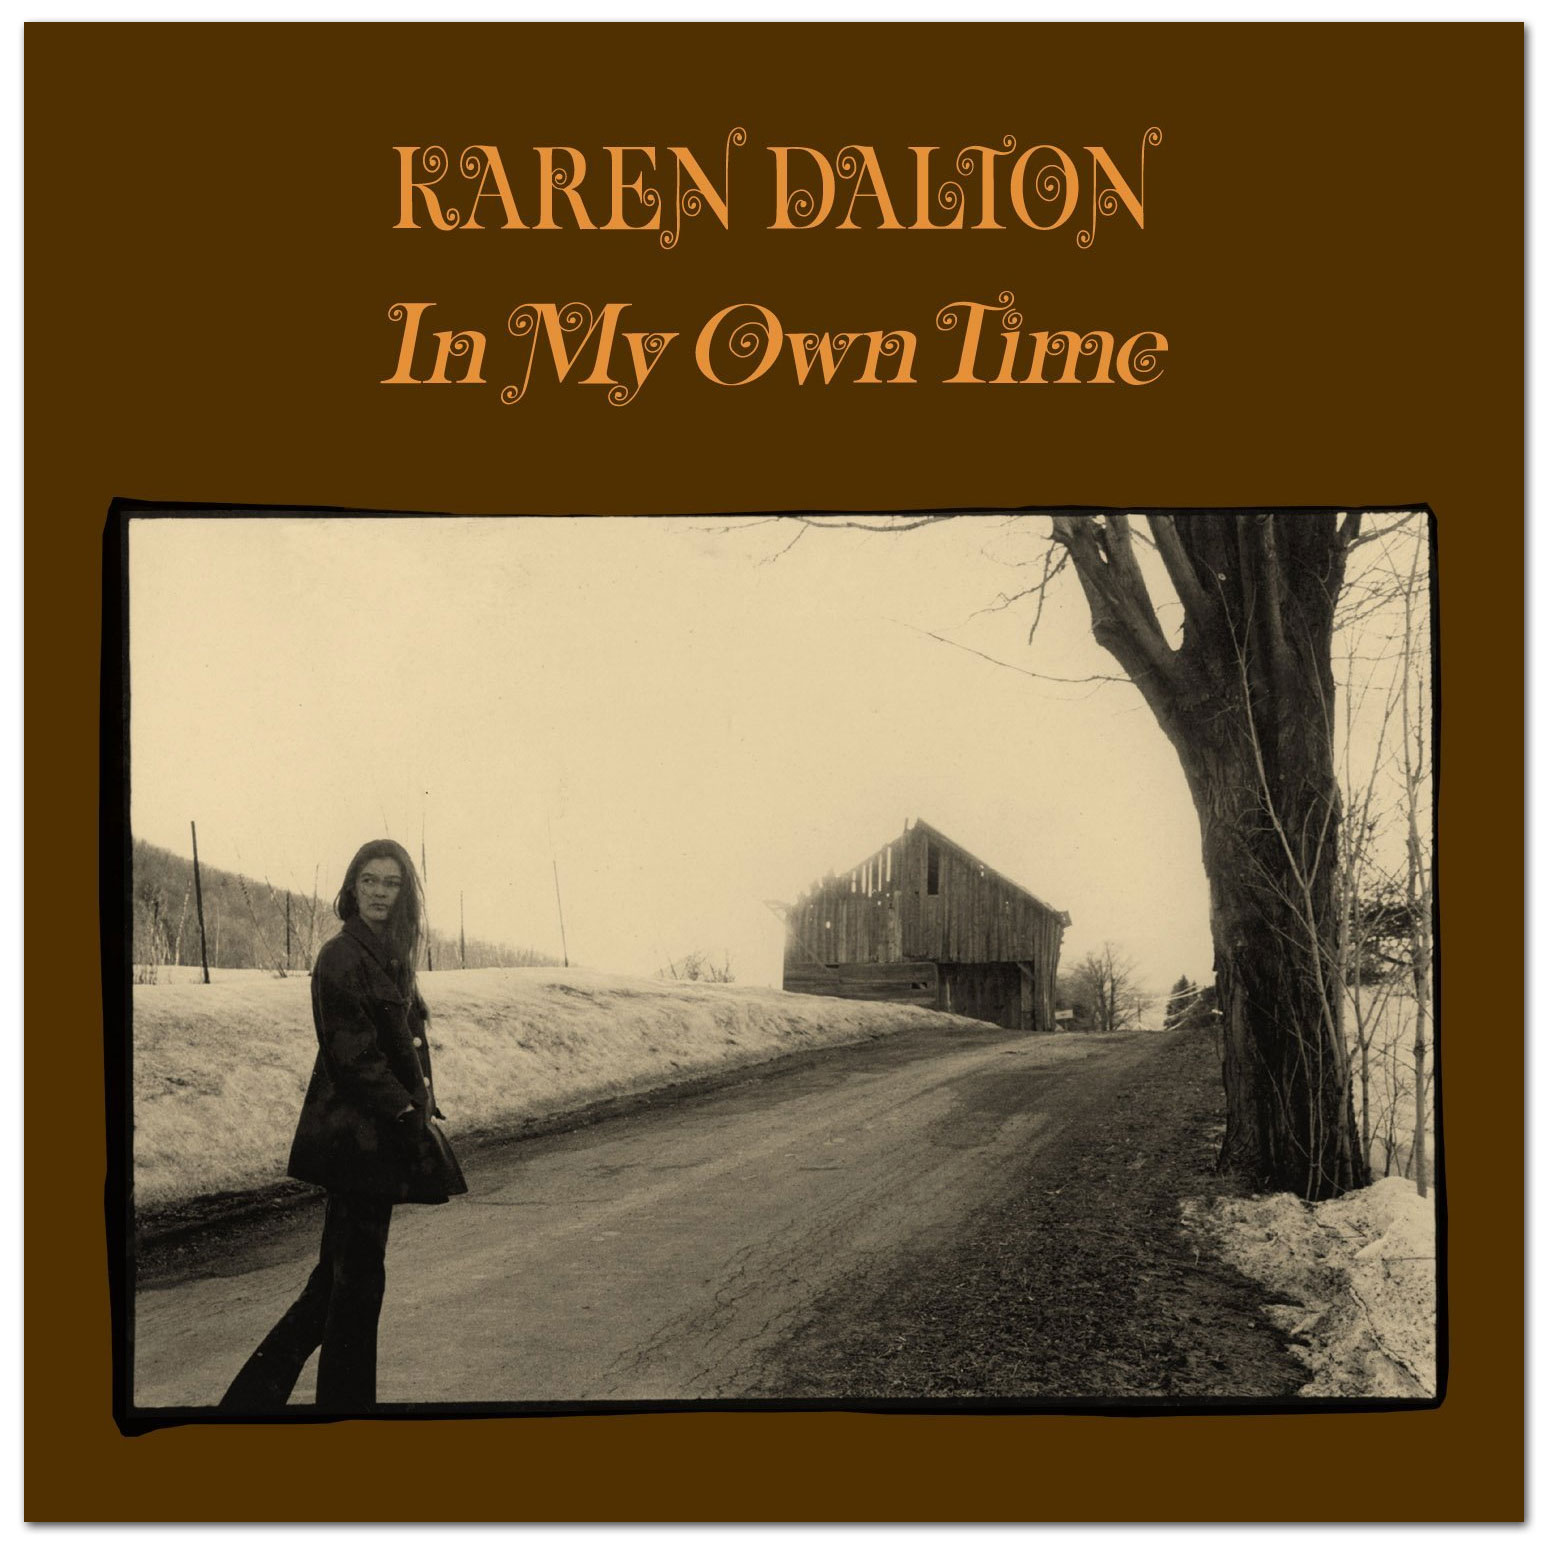 In my own time - Karen Dalton